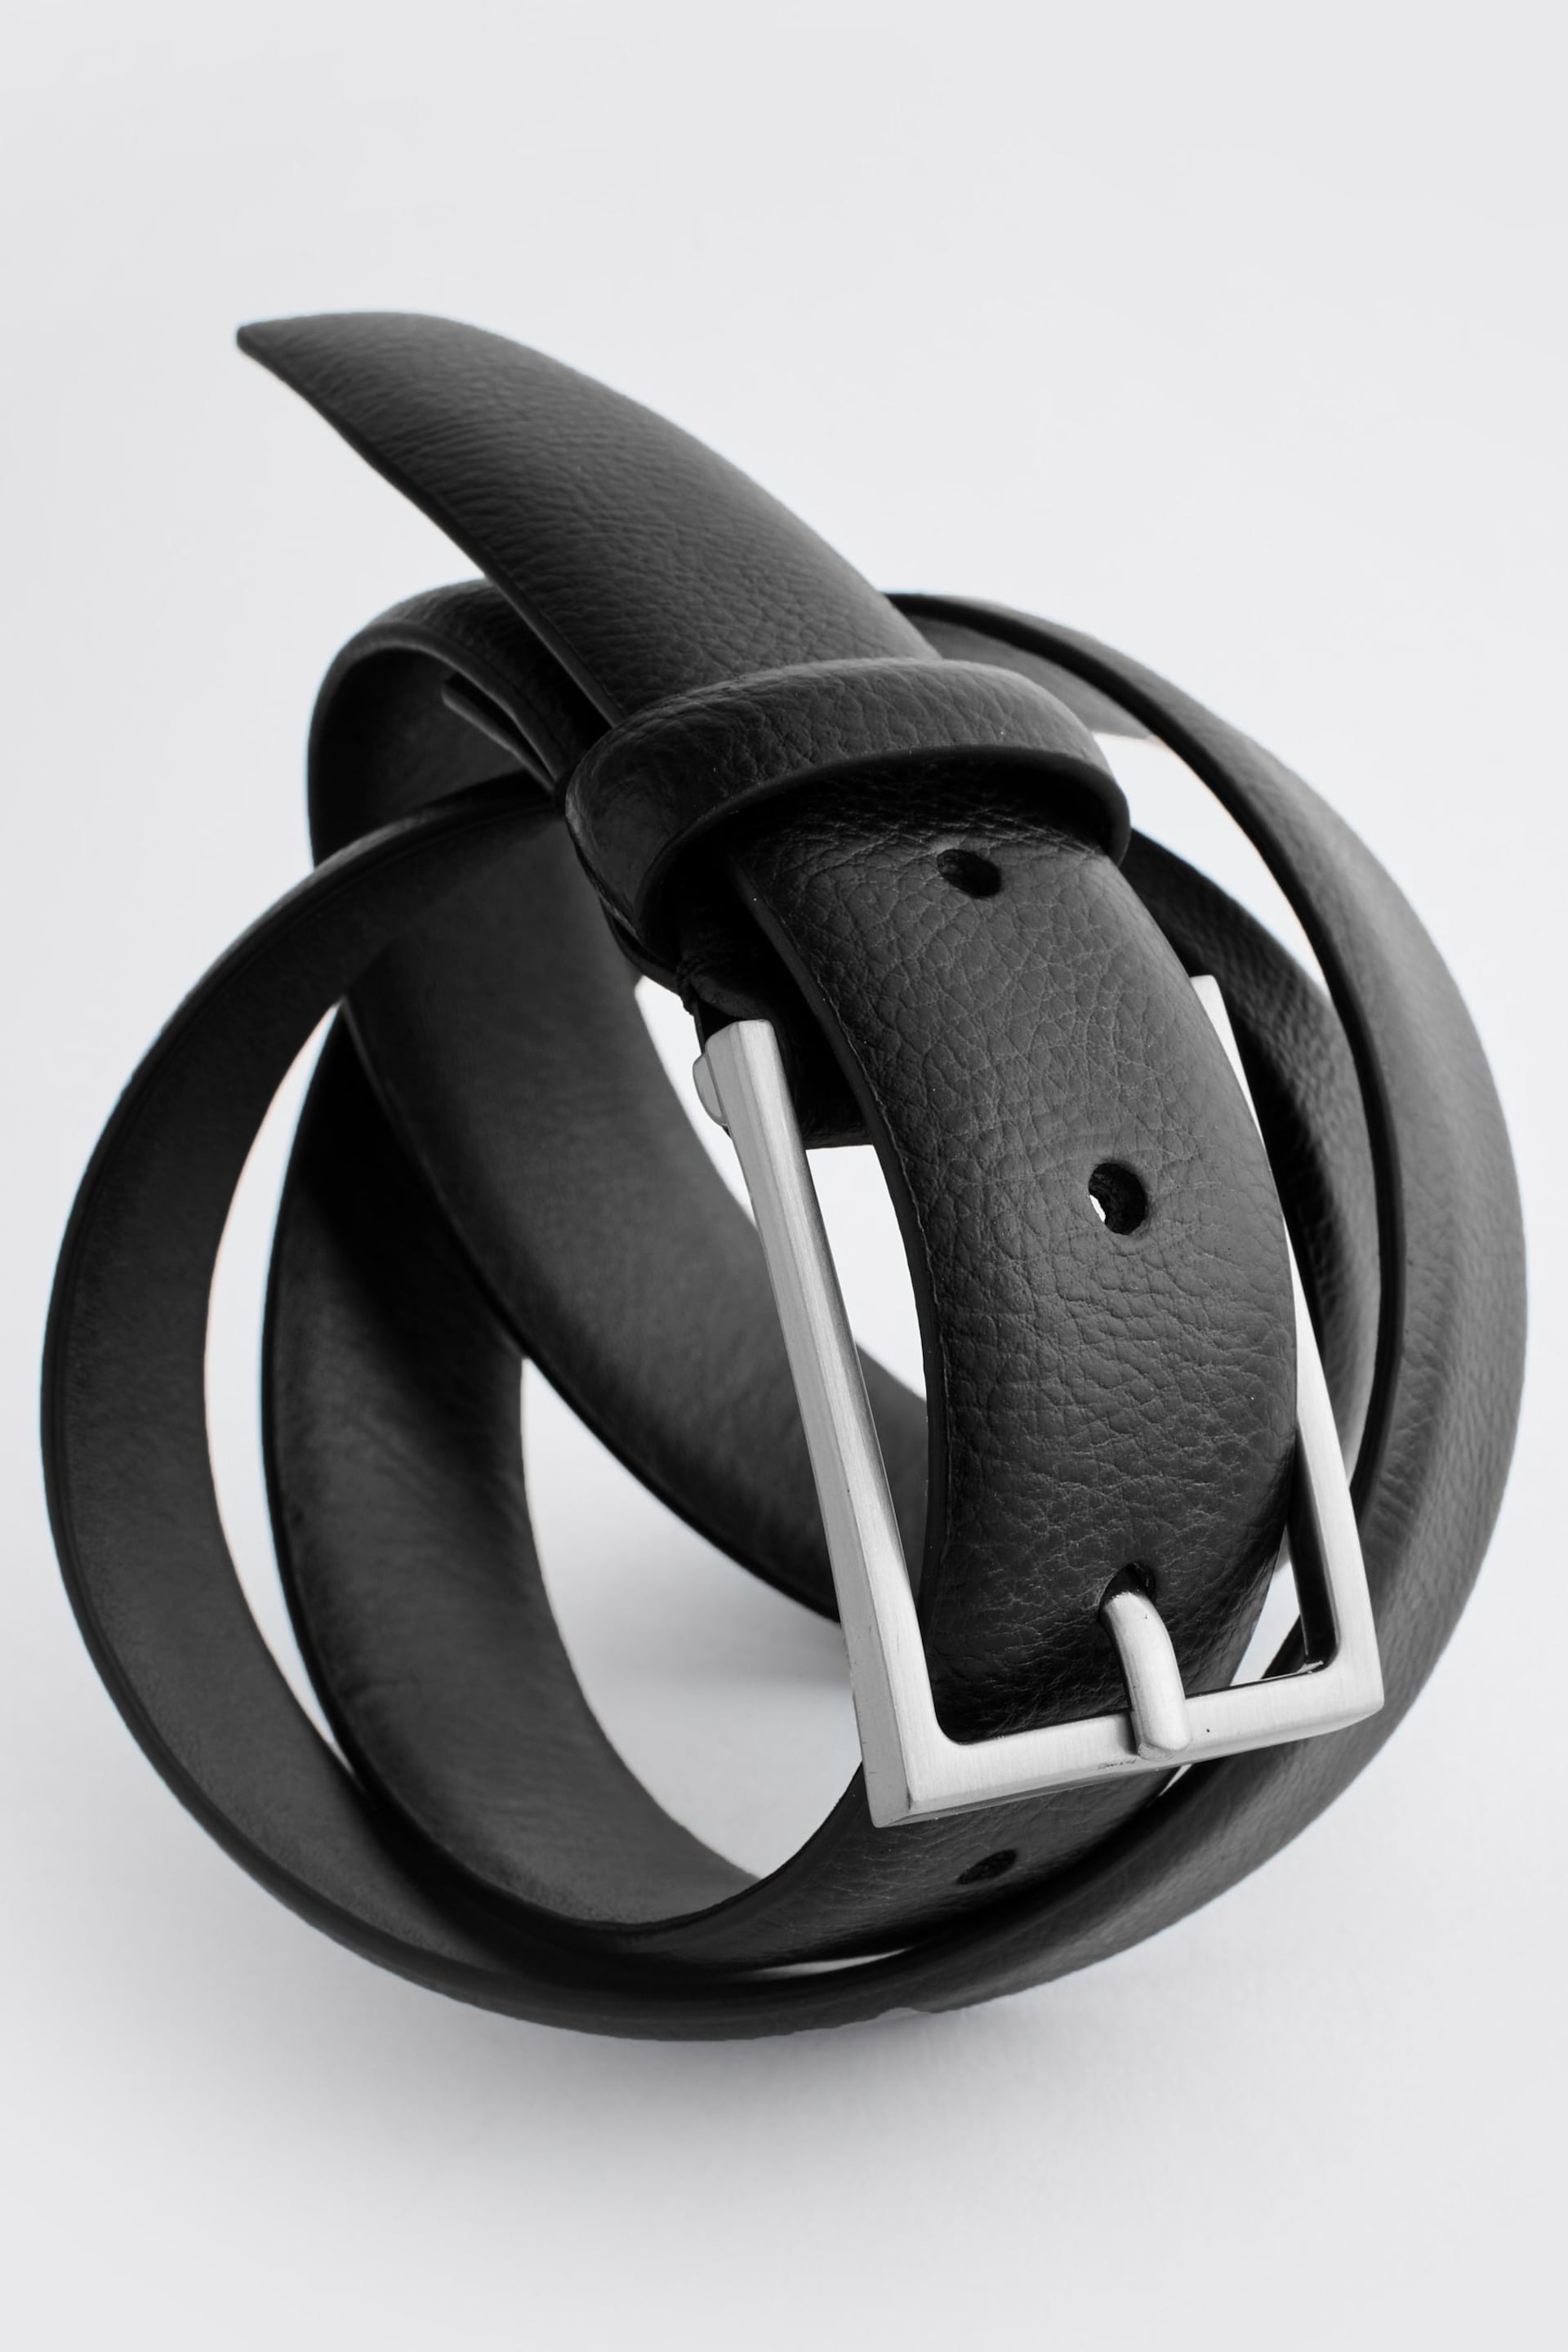 Black Formal Leather Belt - Image 4 of 5